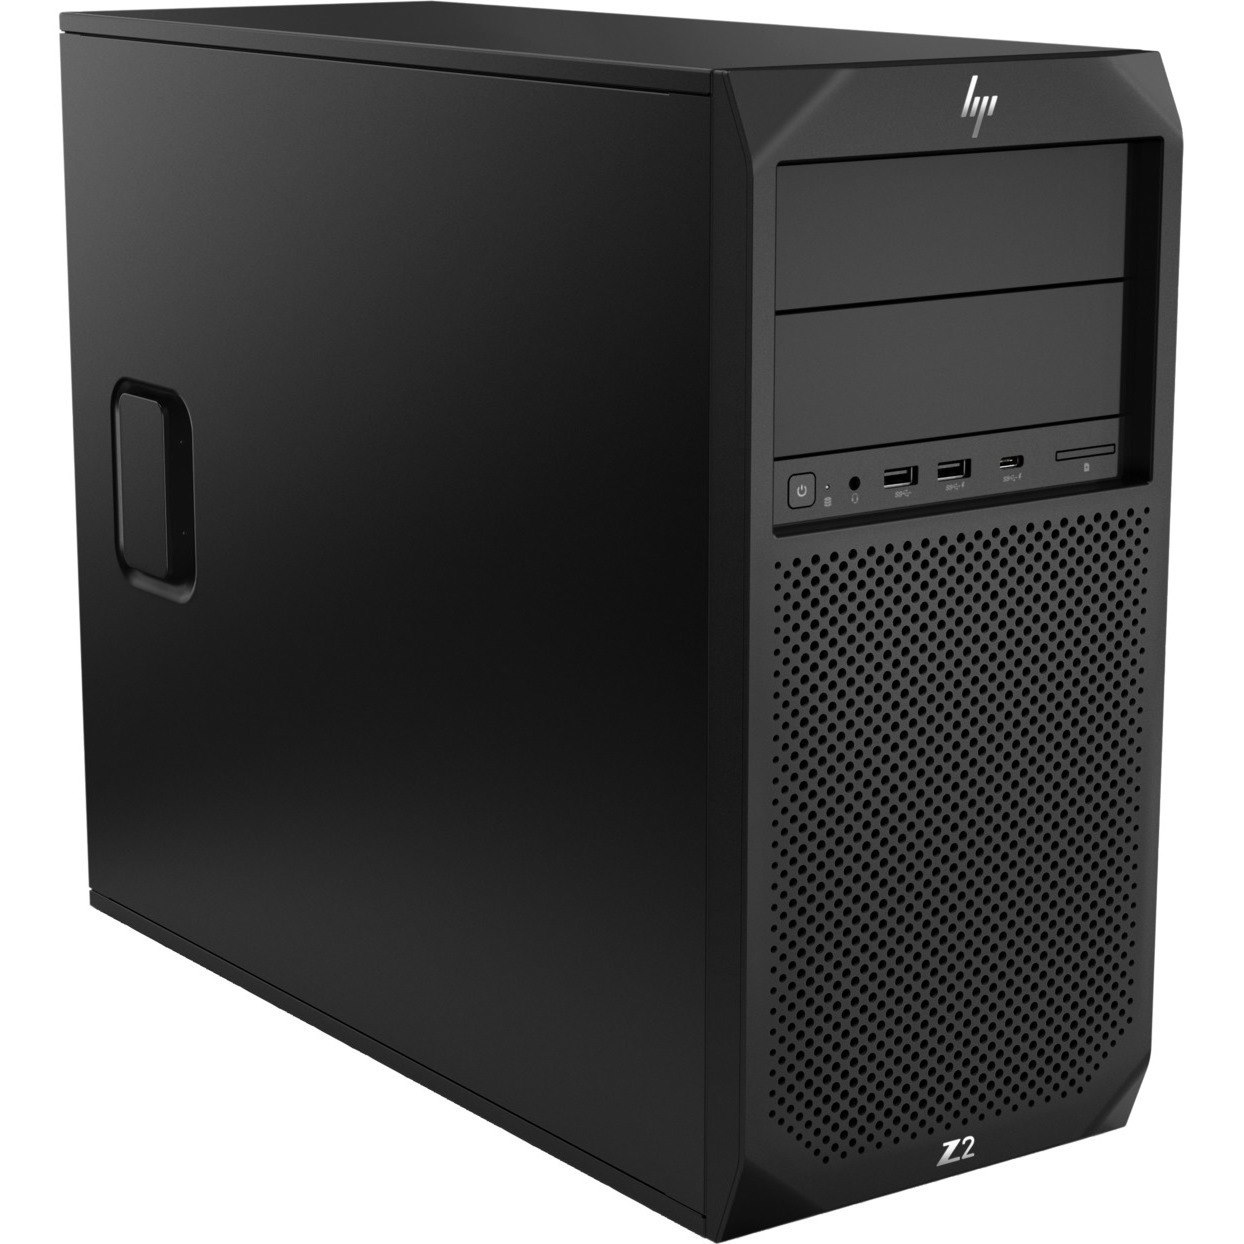 HP Z2 G4 Workstation - 1 x Intel Core i7 8th Gen i7-8700 - 16 GB - 256 GB SSD - Mini-tower - Black